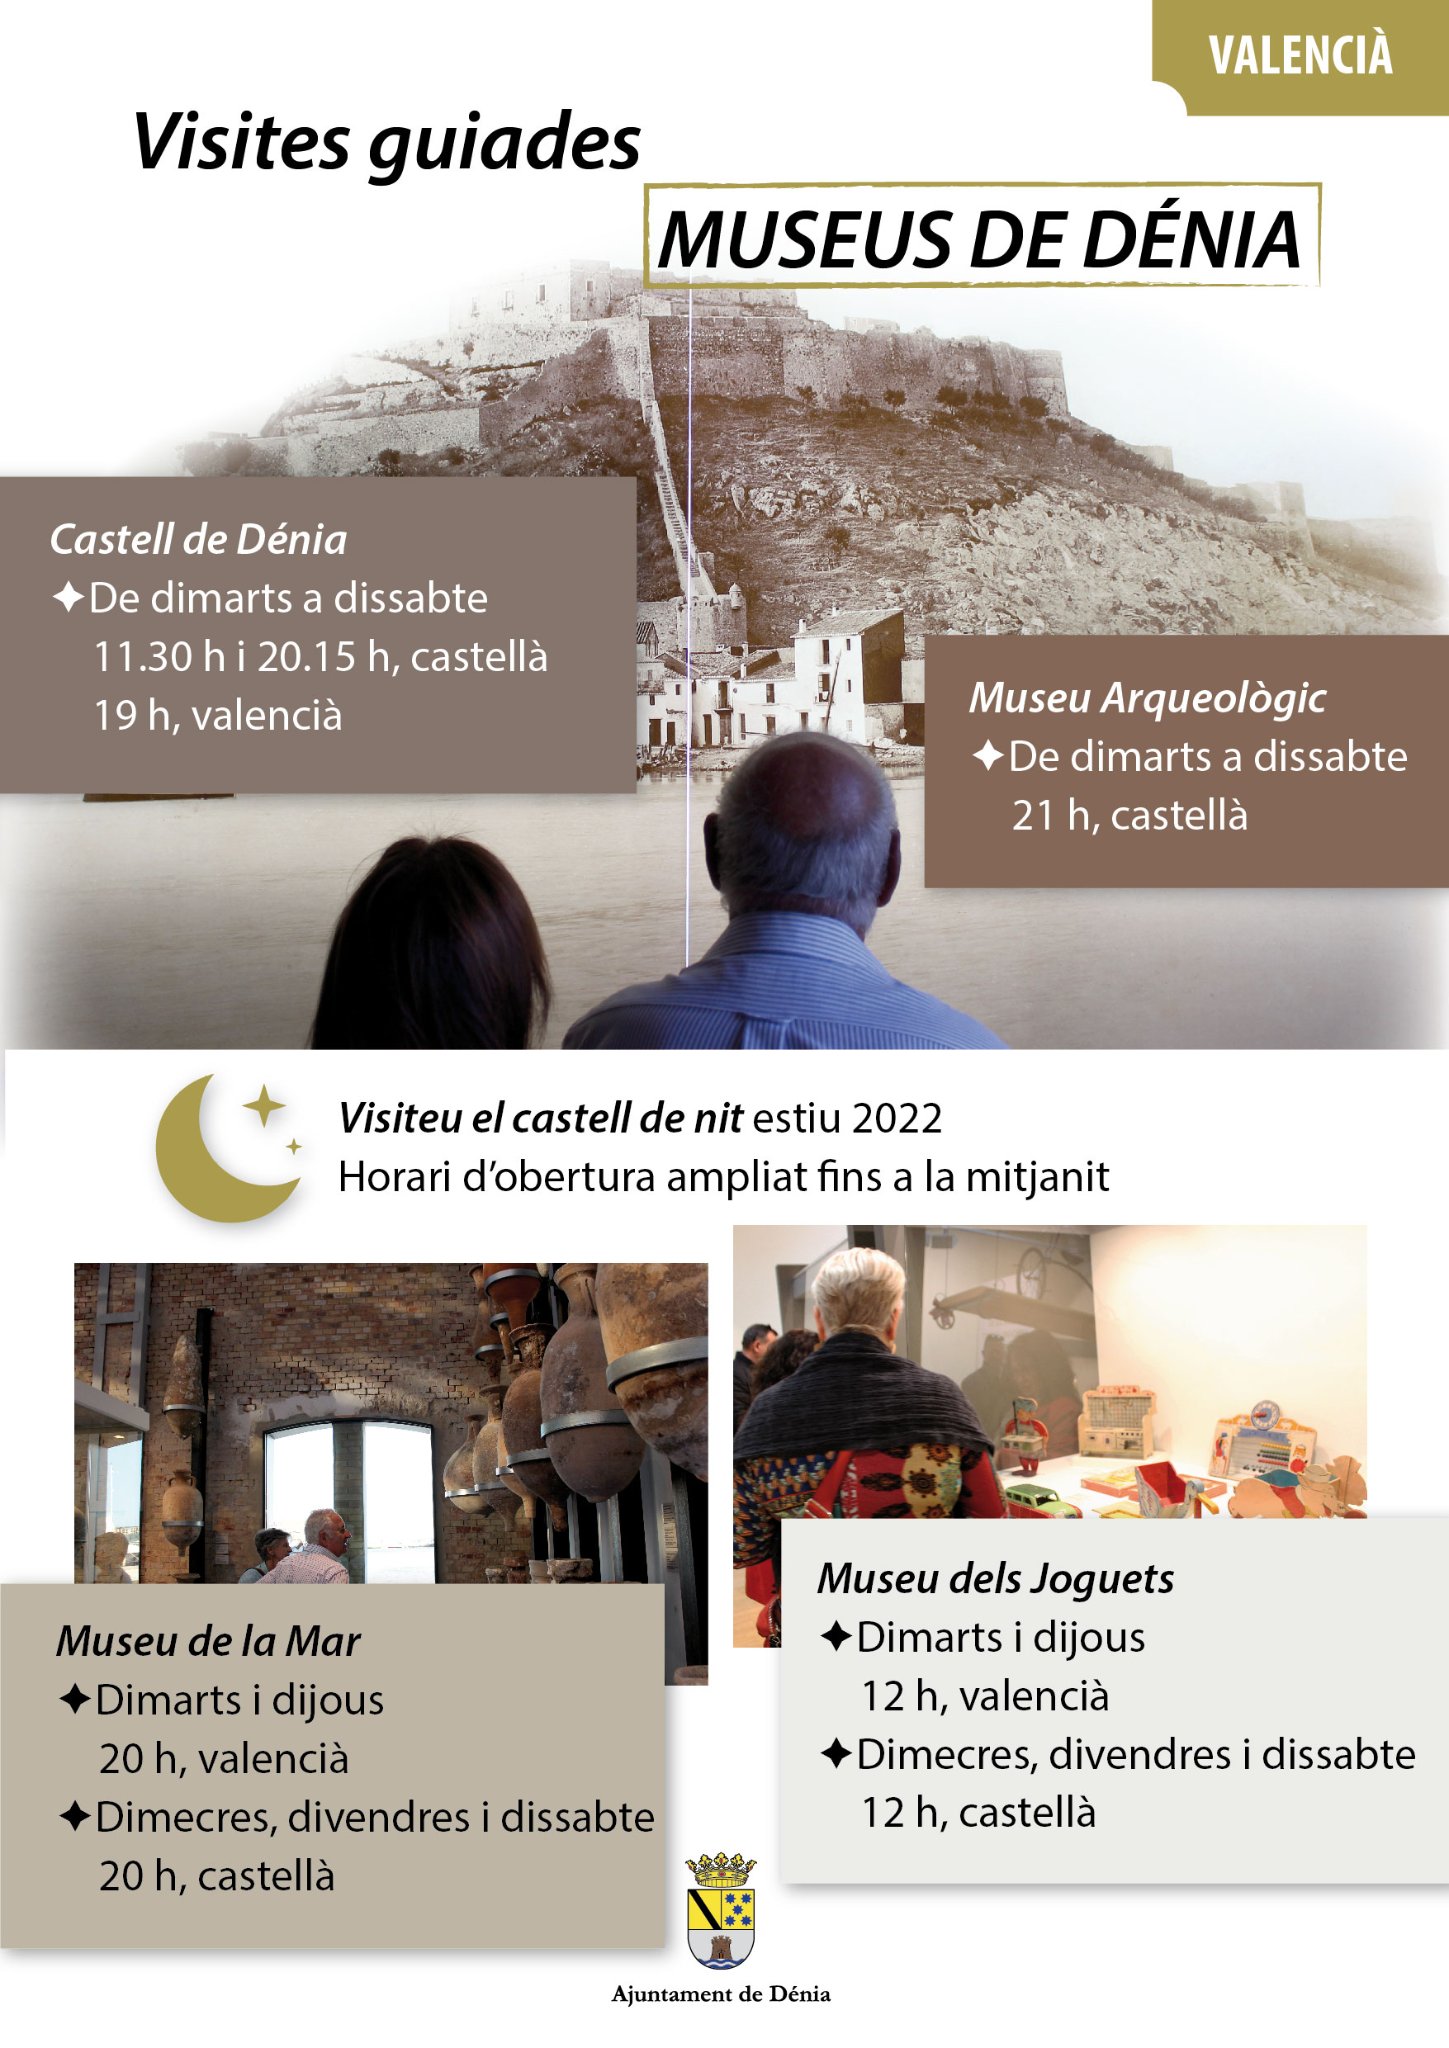  La oferta de visitas guiadas en el Castillo y los museos de la ciudad durante el verano incorpora el valenciano y aumenta su frecuencia 